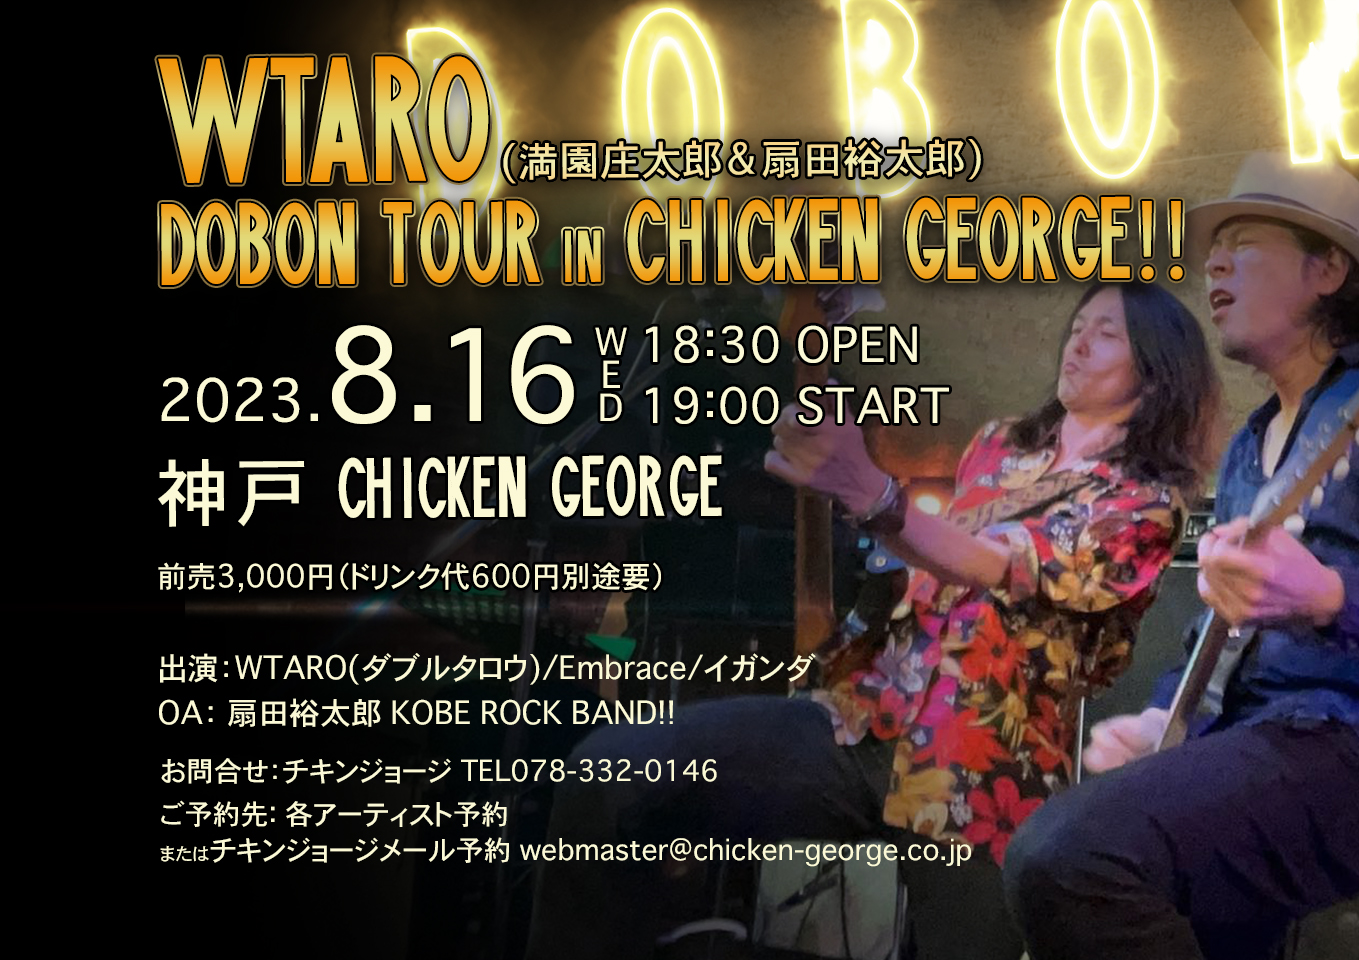 8/16(水) DOBON TOUR IN CHICKEN GEORGE!!【神戸チキンジョージからLIVE配信】